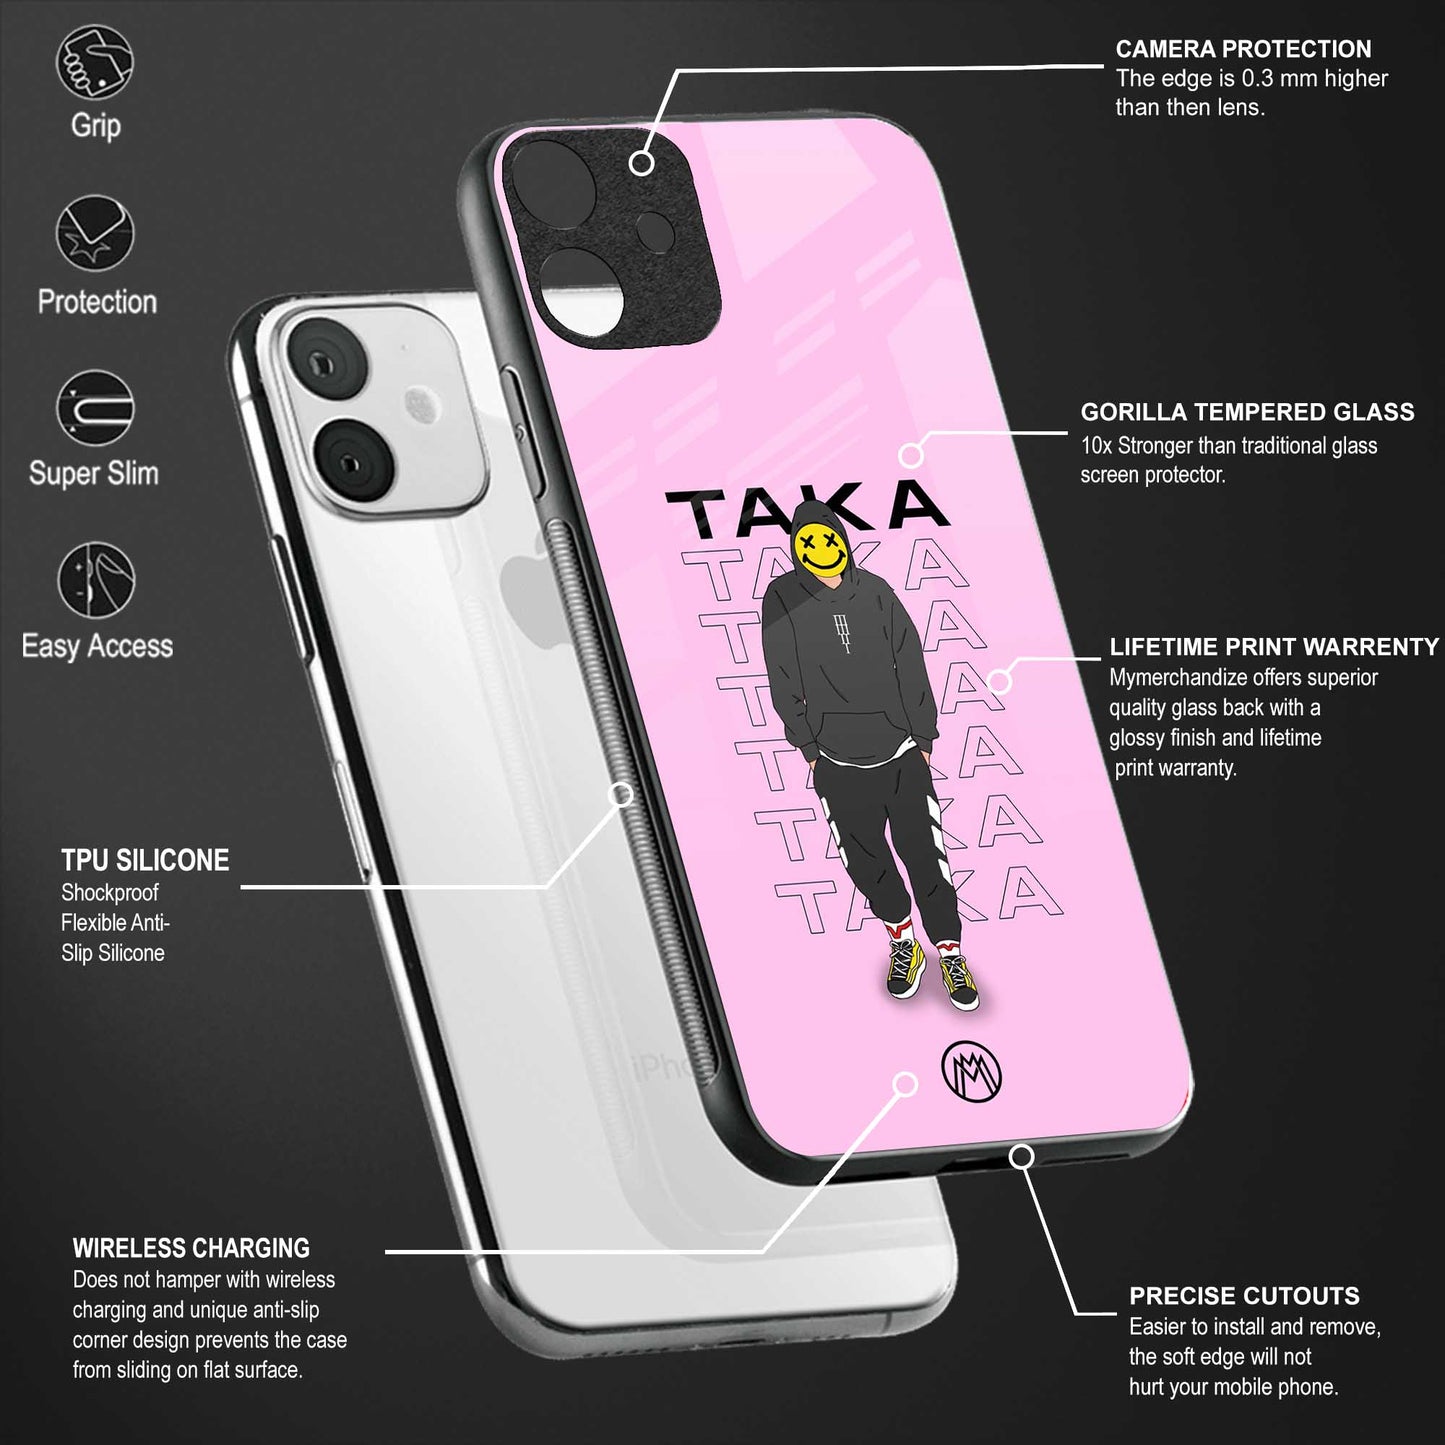 taka taka glass case for realme xt image-4